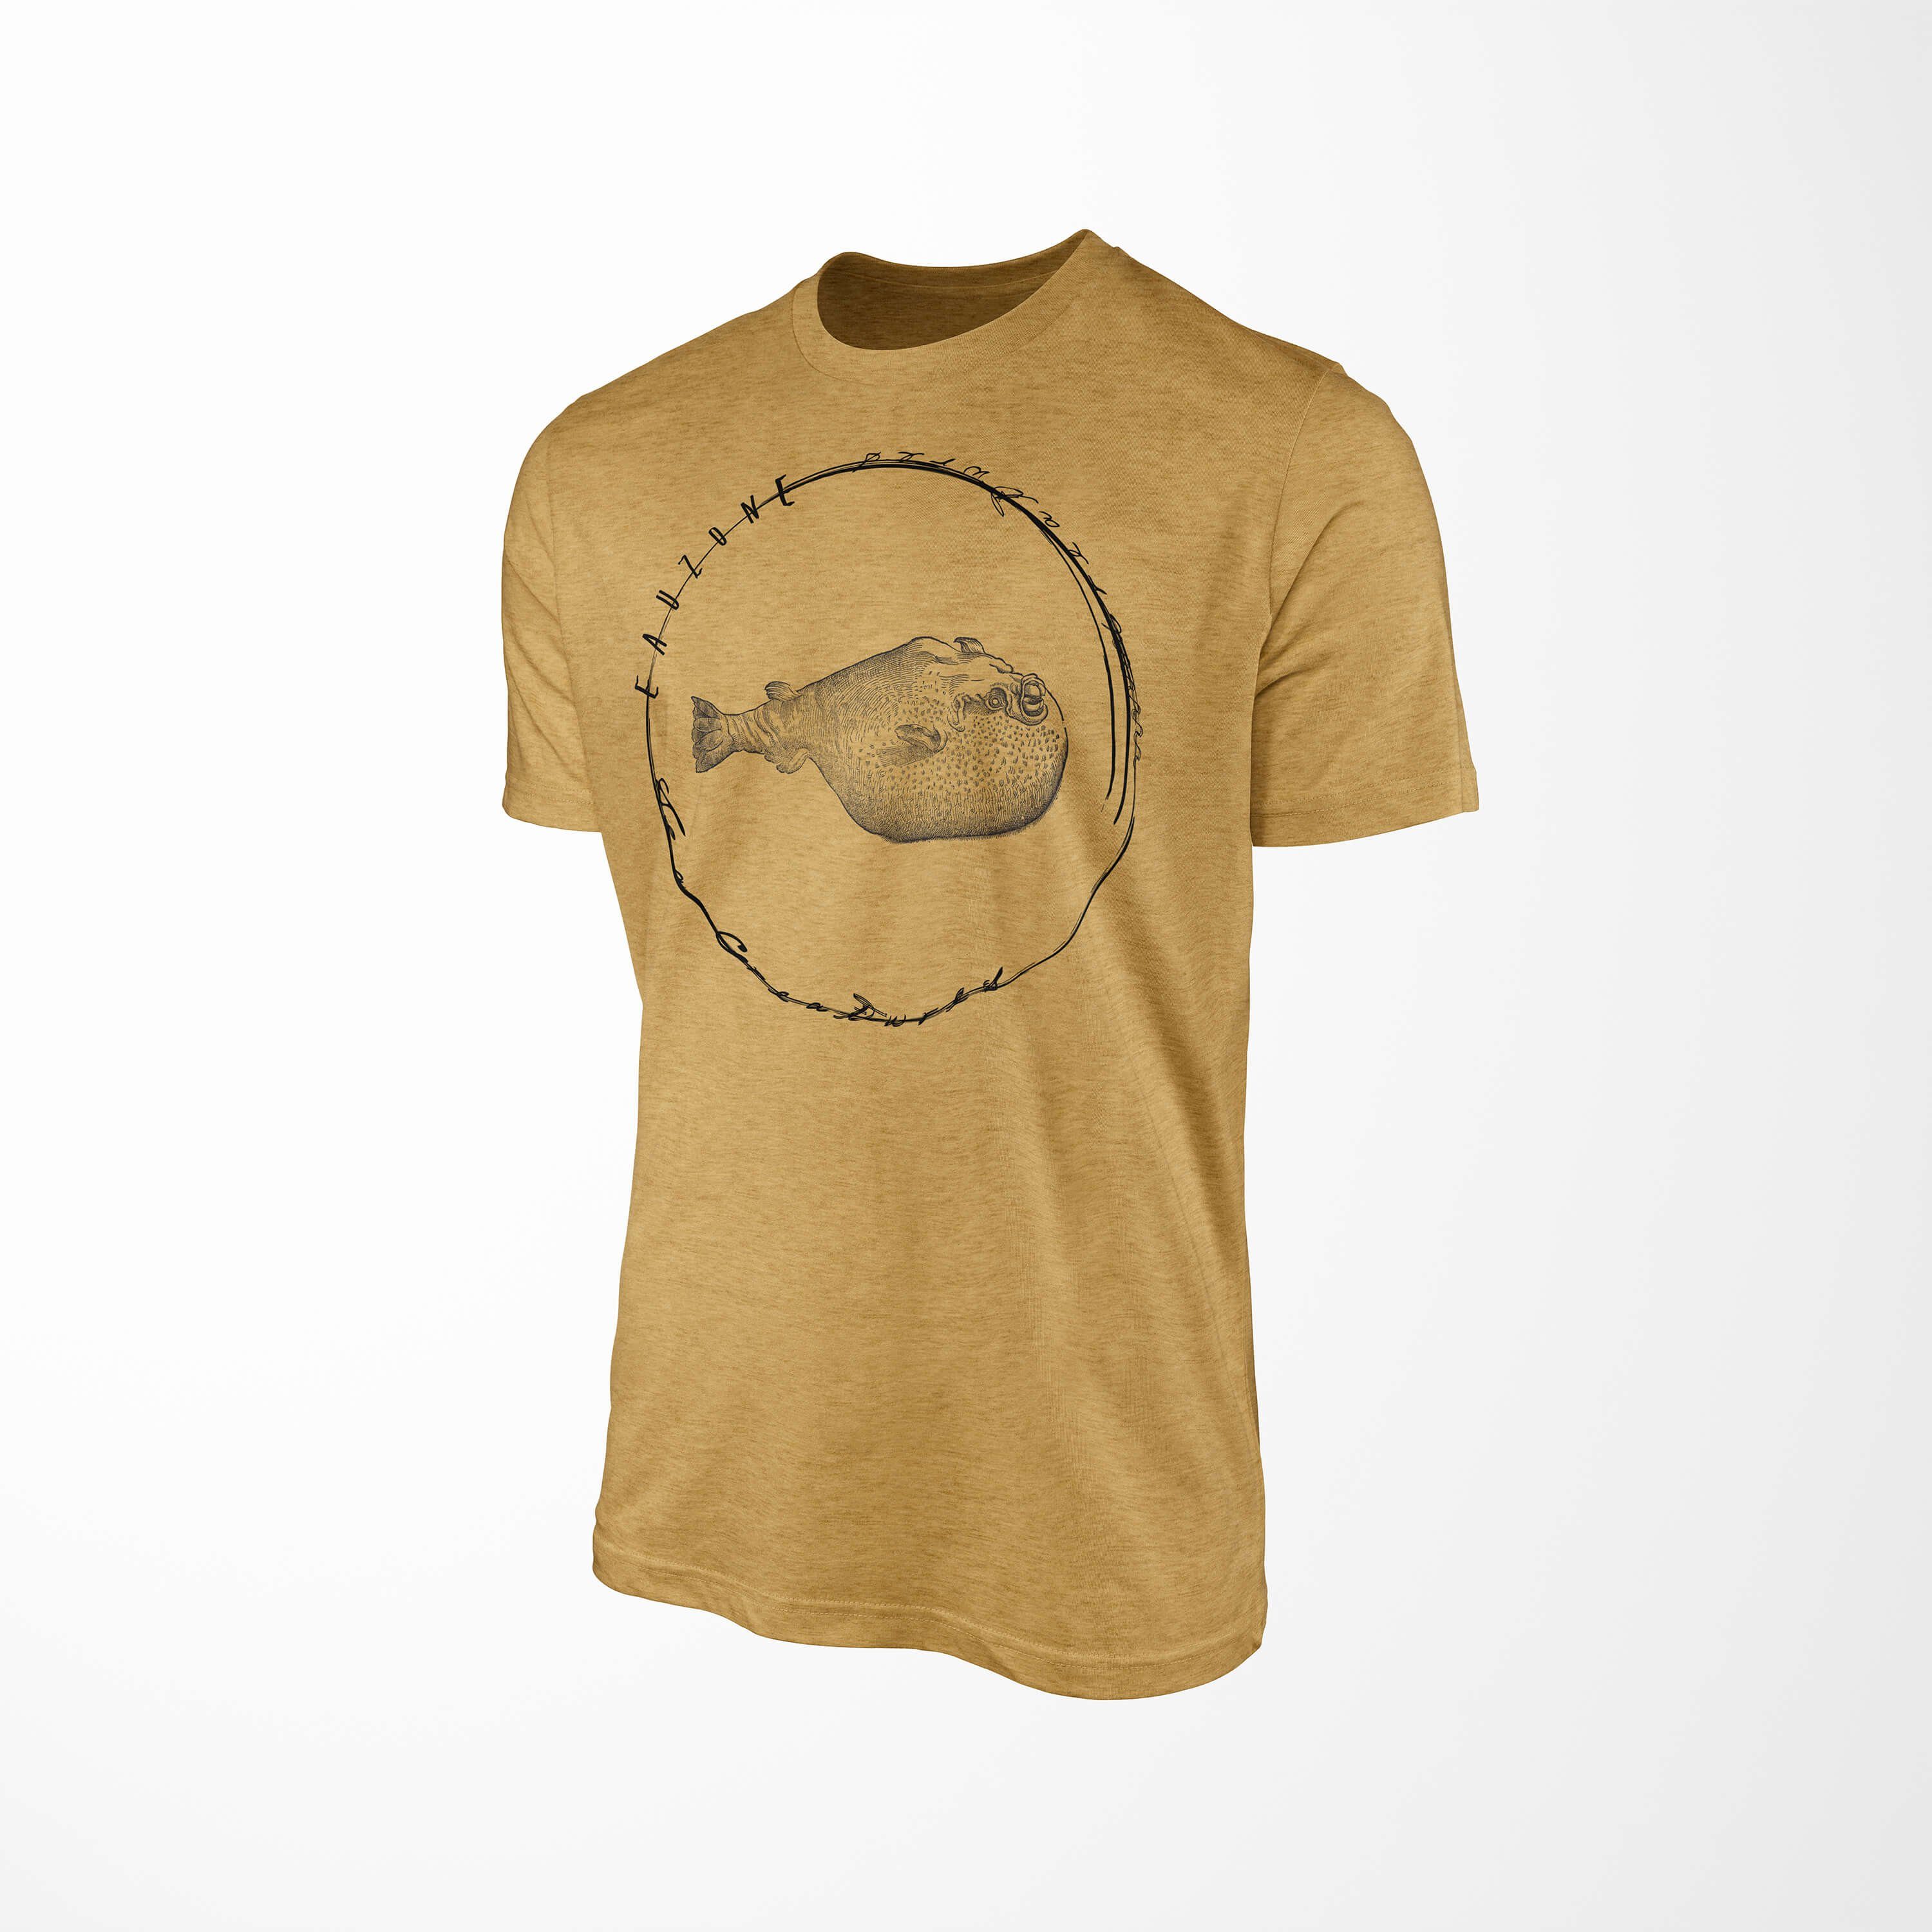 sportlicher Sinus und Sea - Schnitt T-Shirt 089 feine Fische Creatures, Tiefsee Serie: Gold Struktur Sea T-Shirt Antique Art /